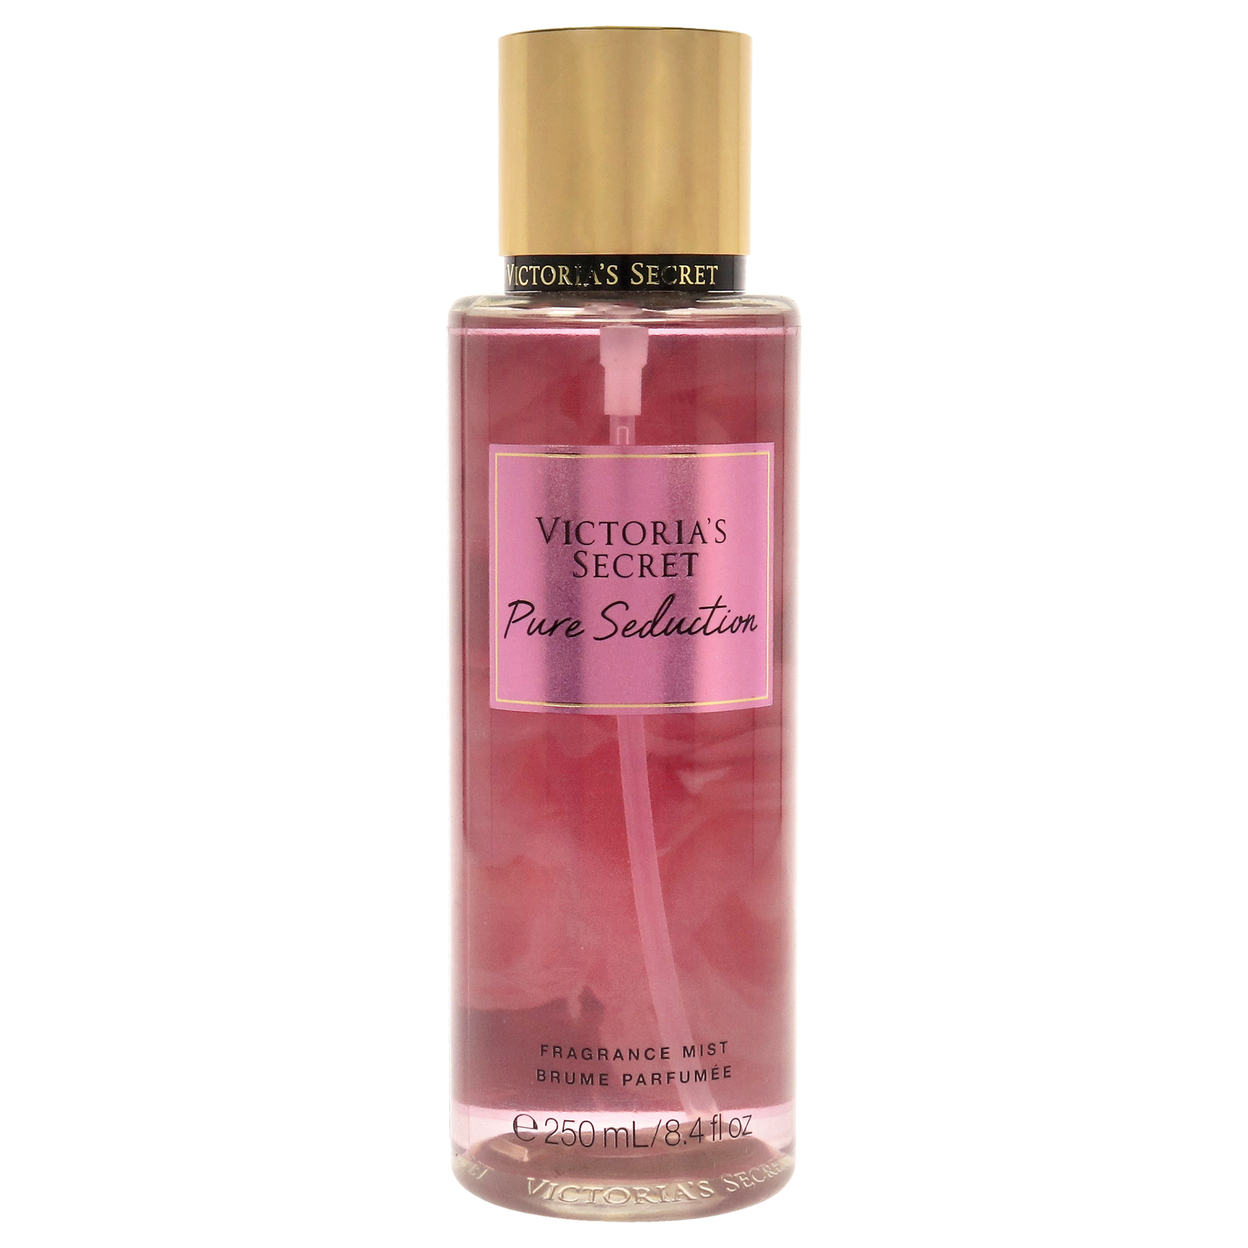 Victoria's Secret Pure Seduction Fragrance Mist 8.4 Oz